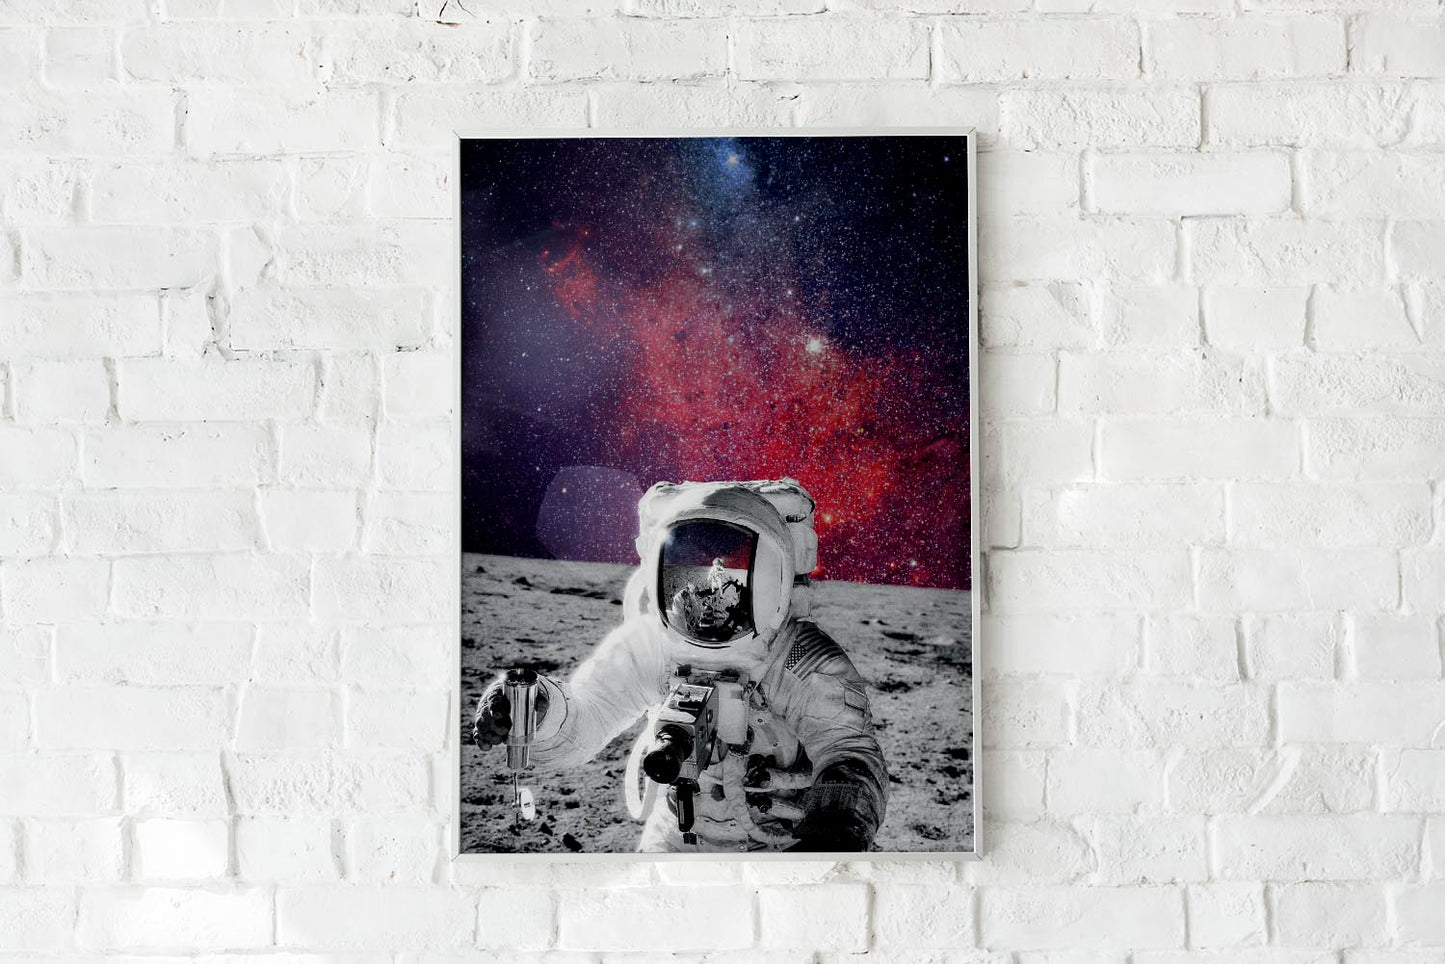 Cosmic Astronaut